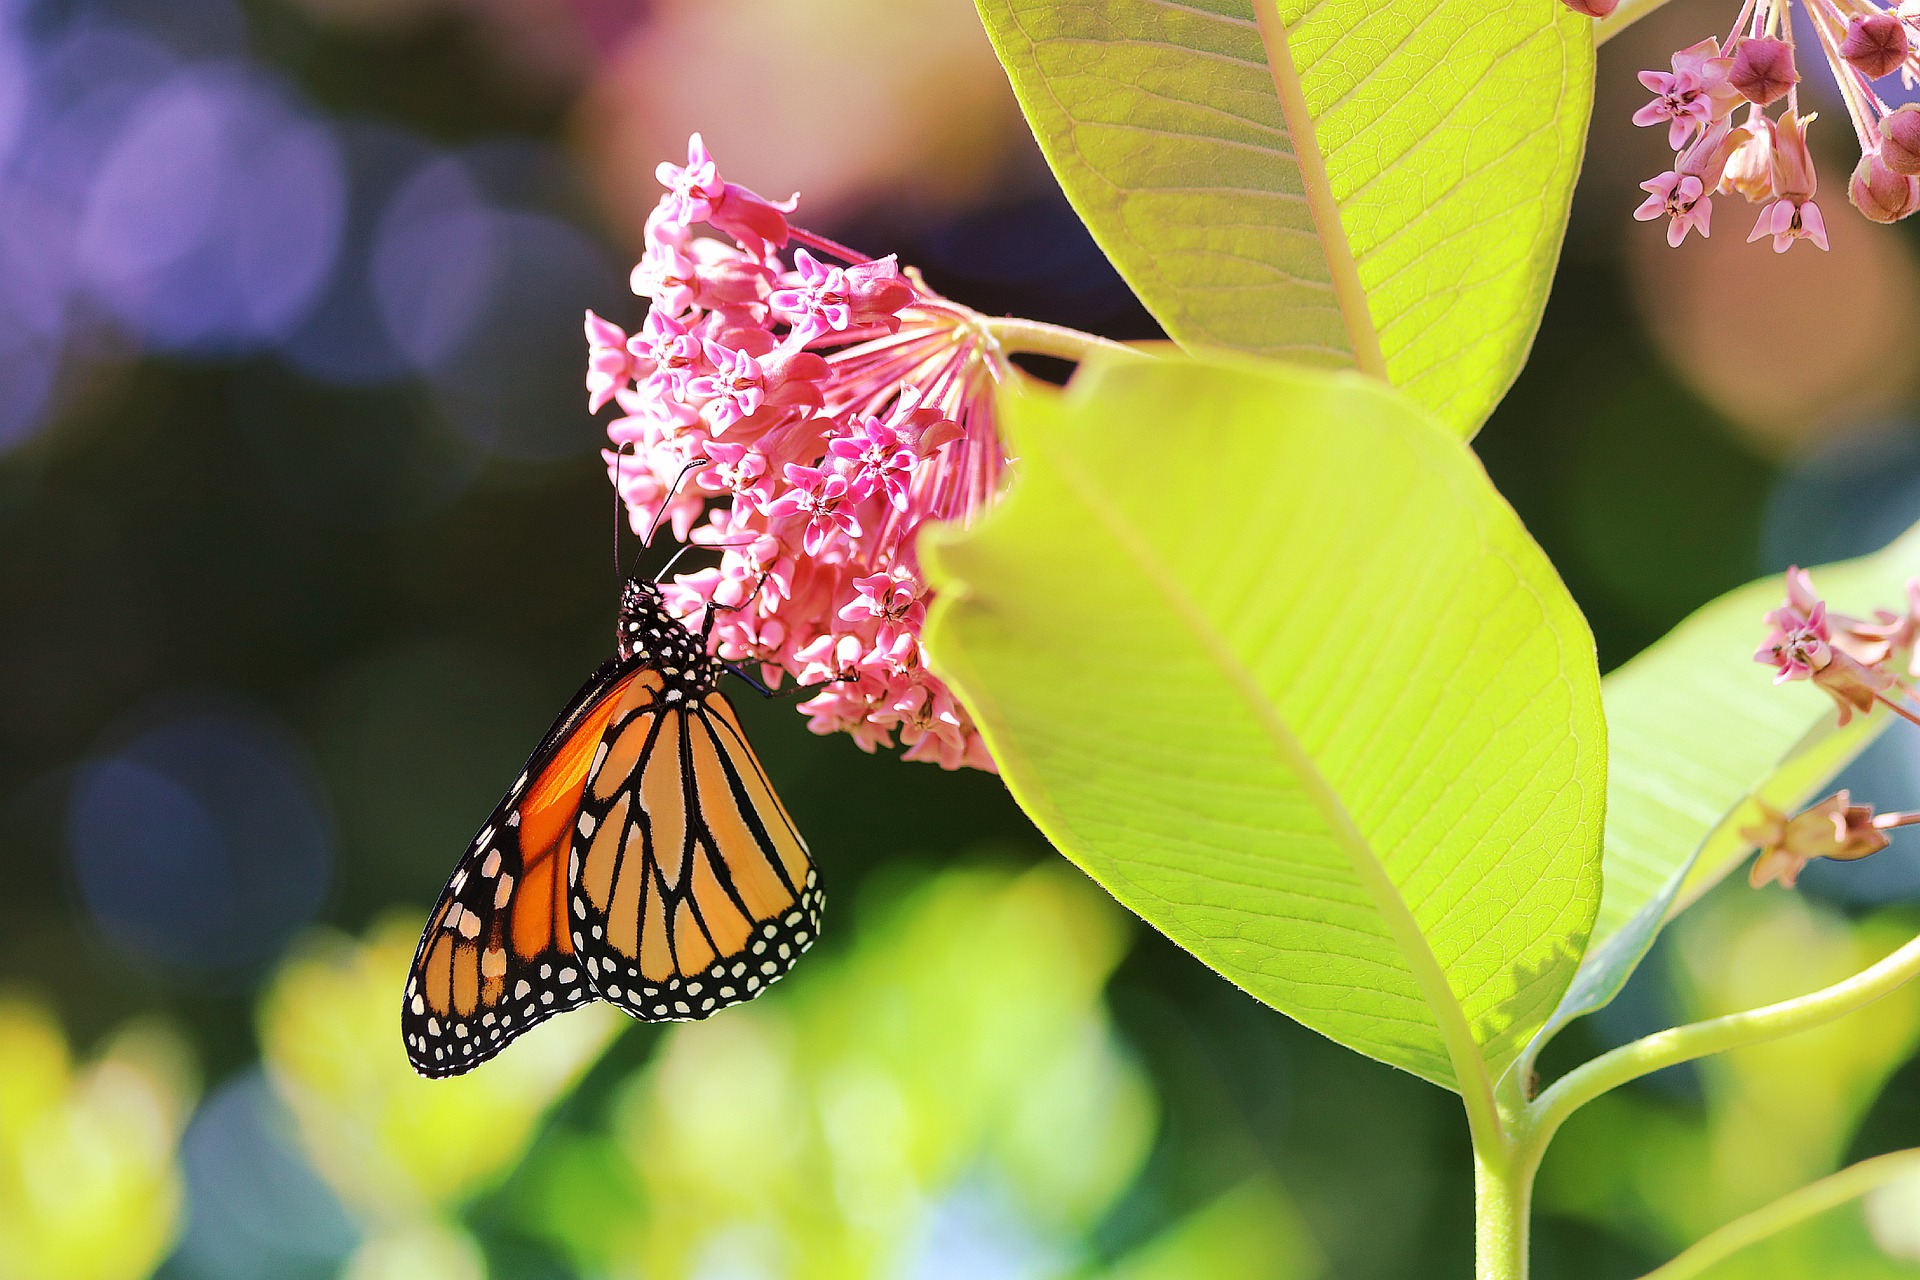 a-monarch-butterfly-4419810_1920.jpg